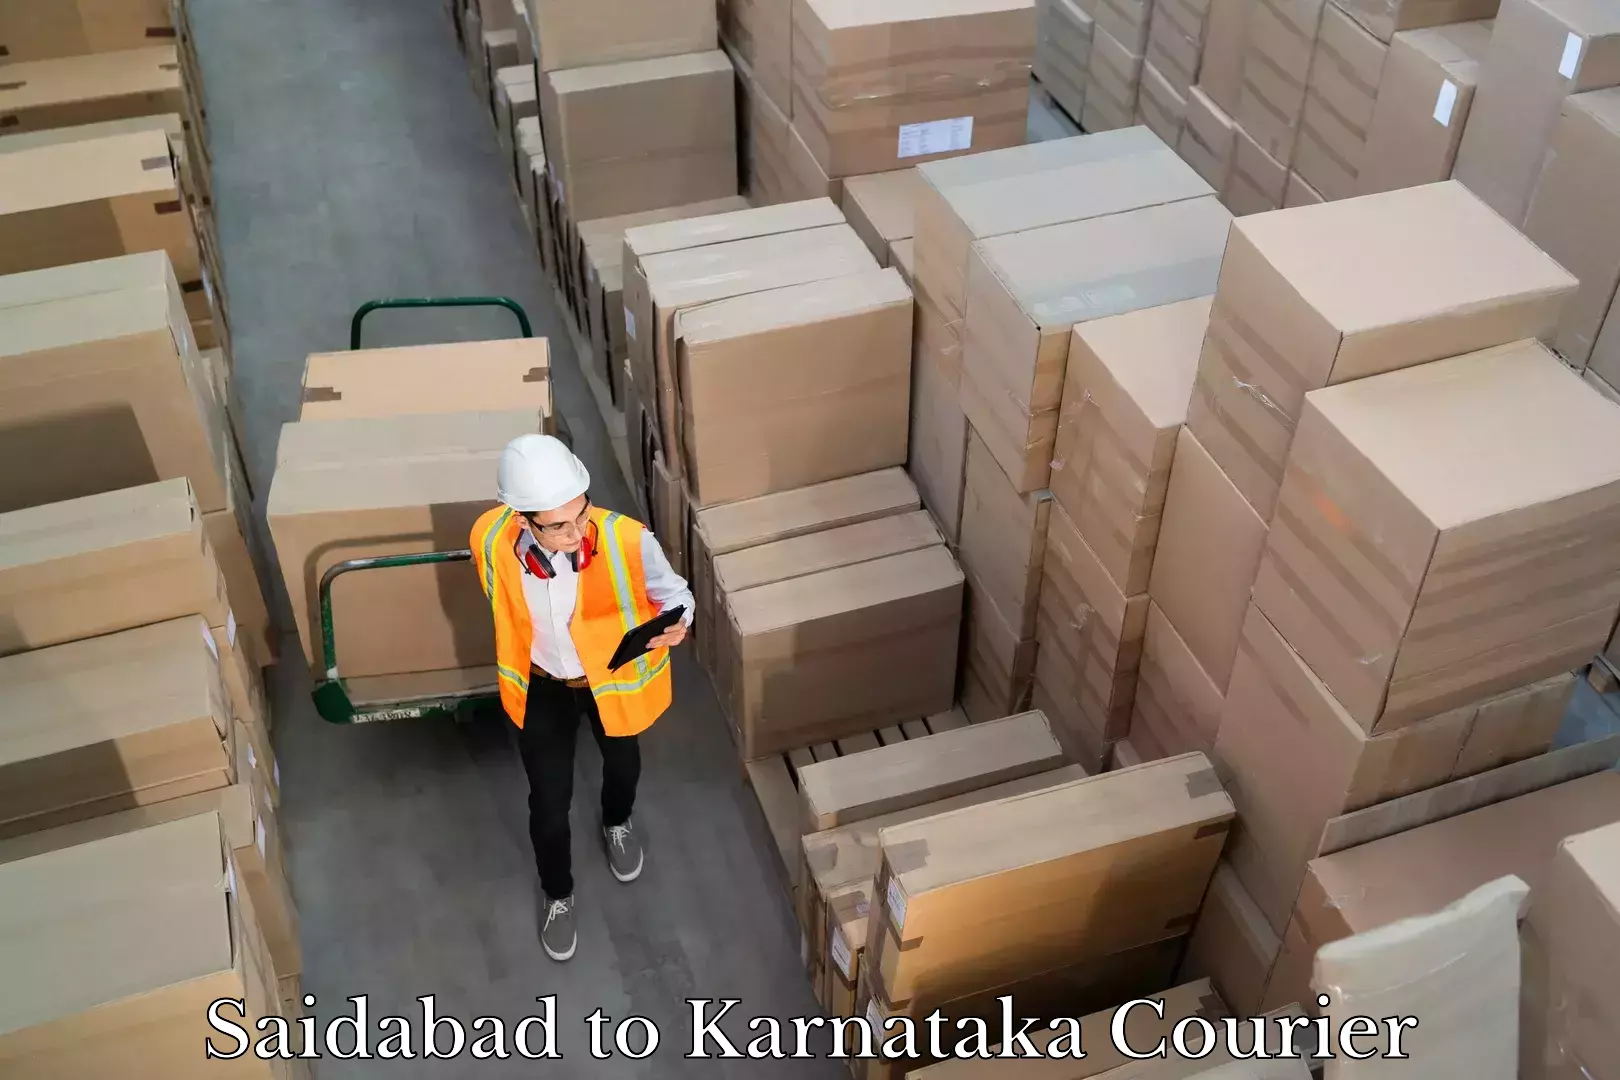 Courier app Saidabad to Karnataka